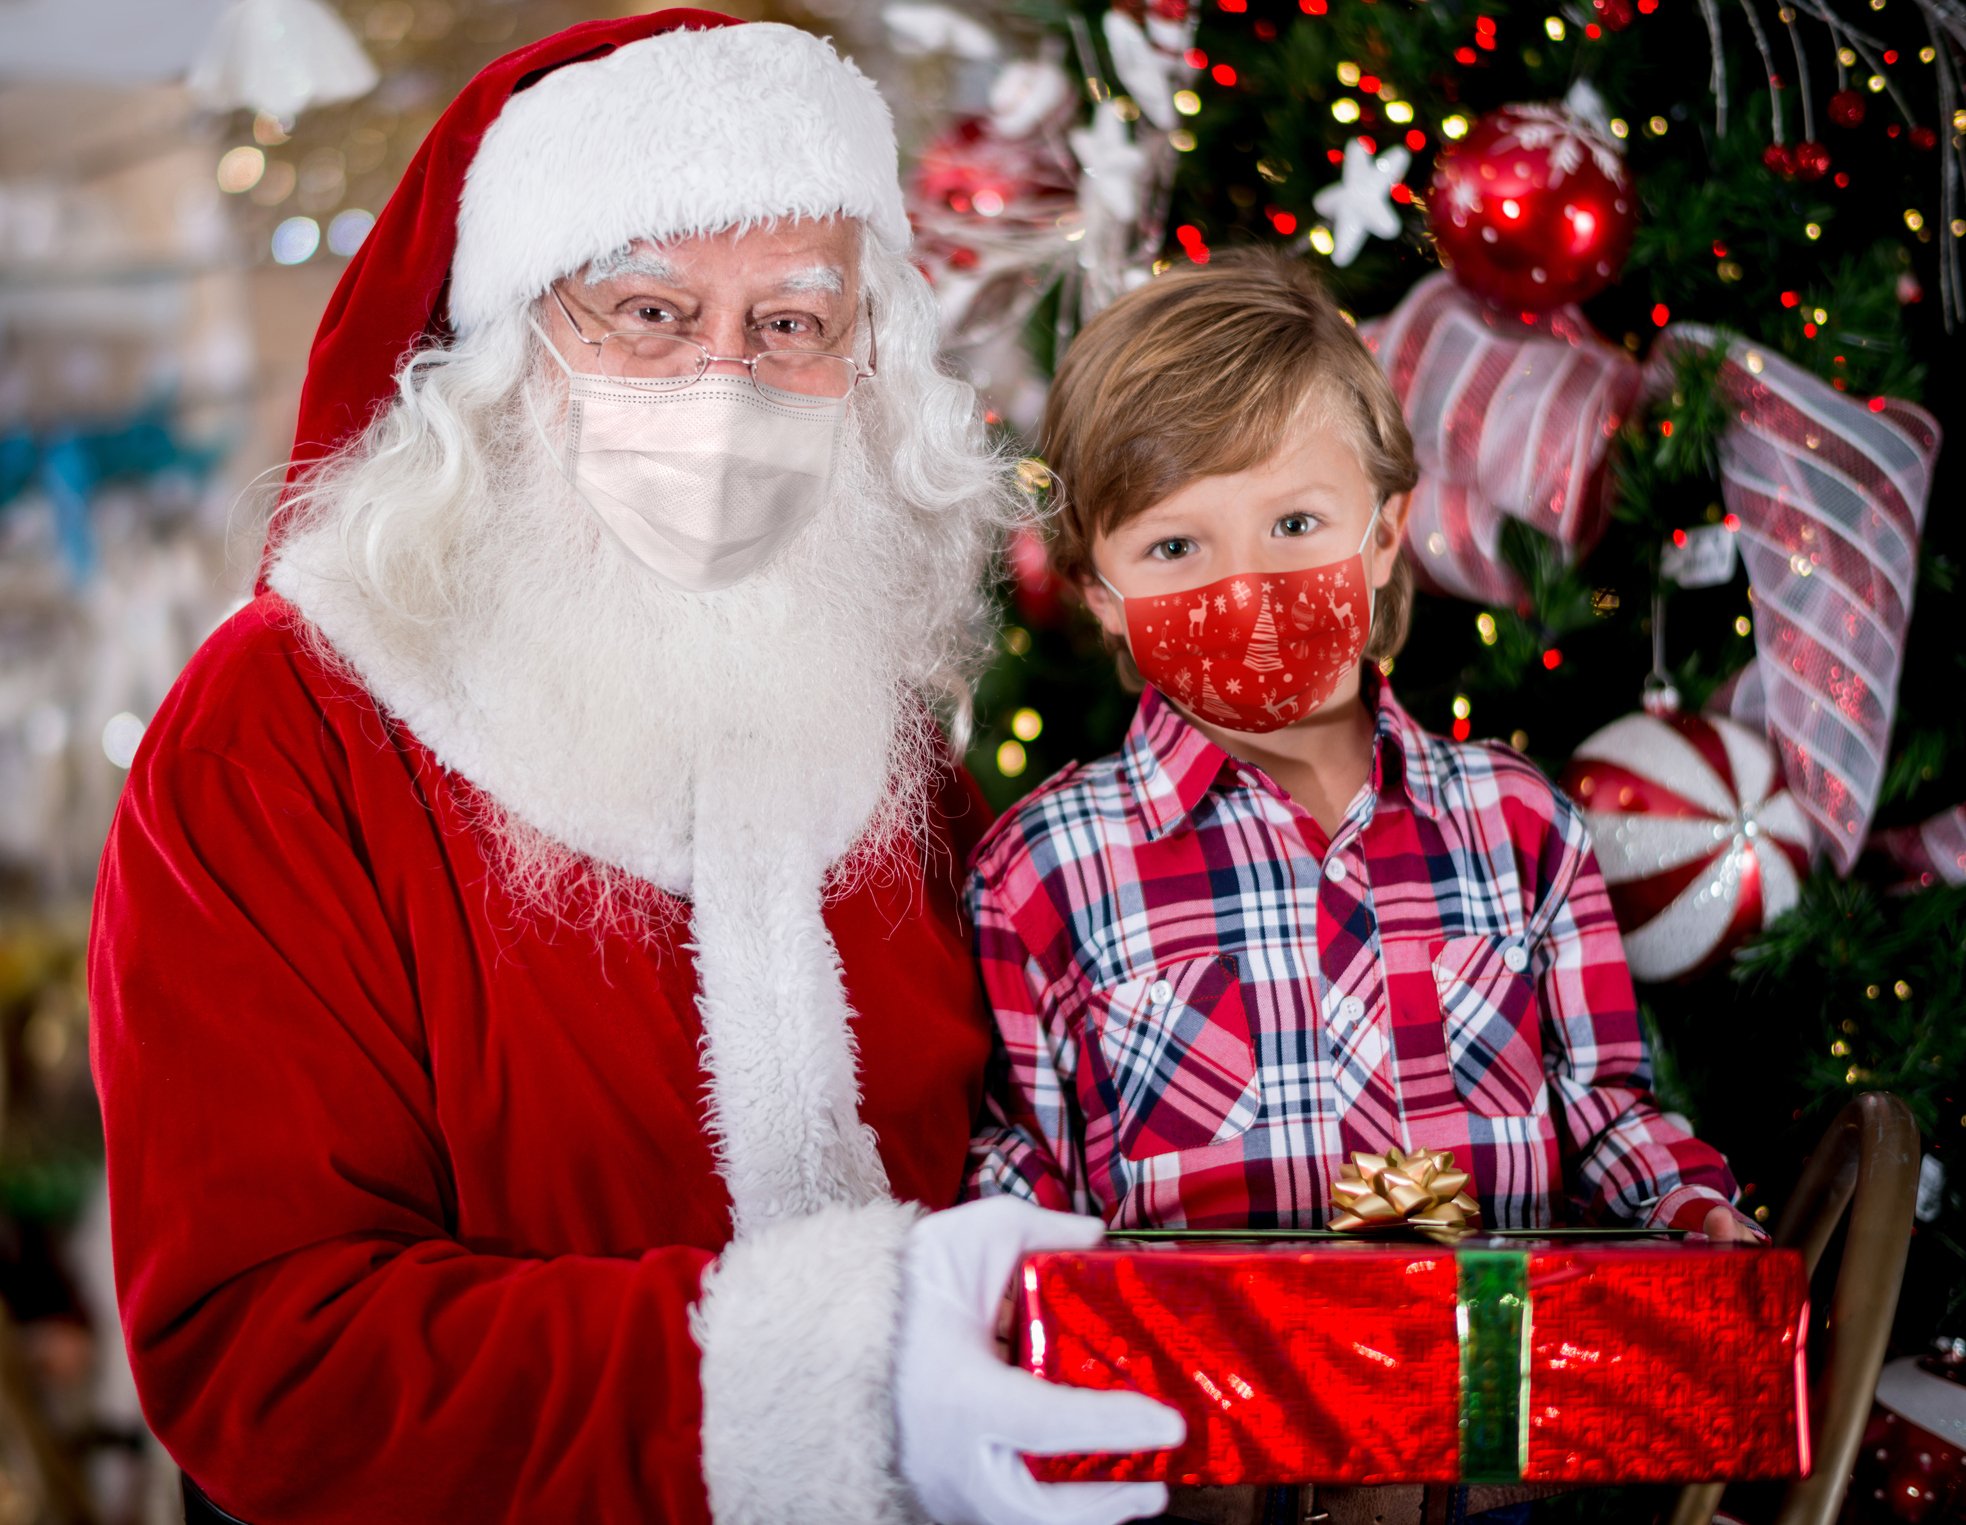 Porträt eines kleinen Jungen mit dem Weihnachtsmann, der Gesichtsmasken trägt, während er ein Geschenk erhält. | Quelle: Getty Images